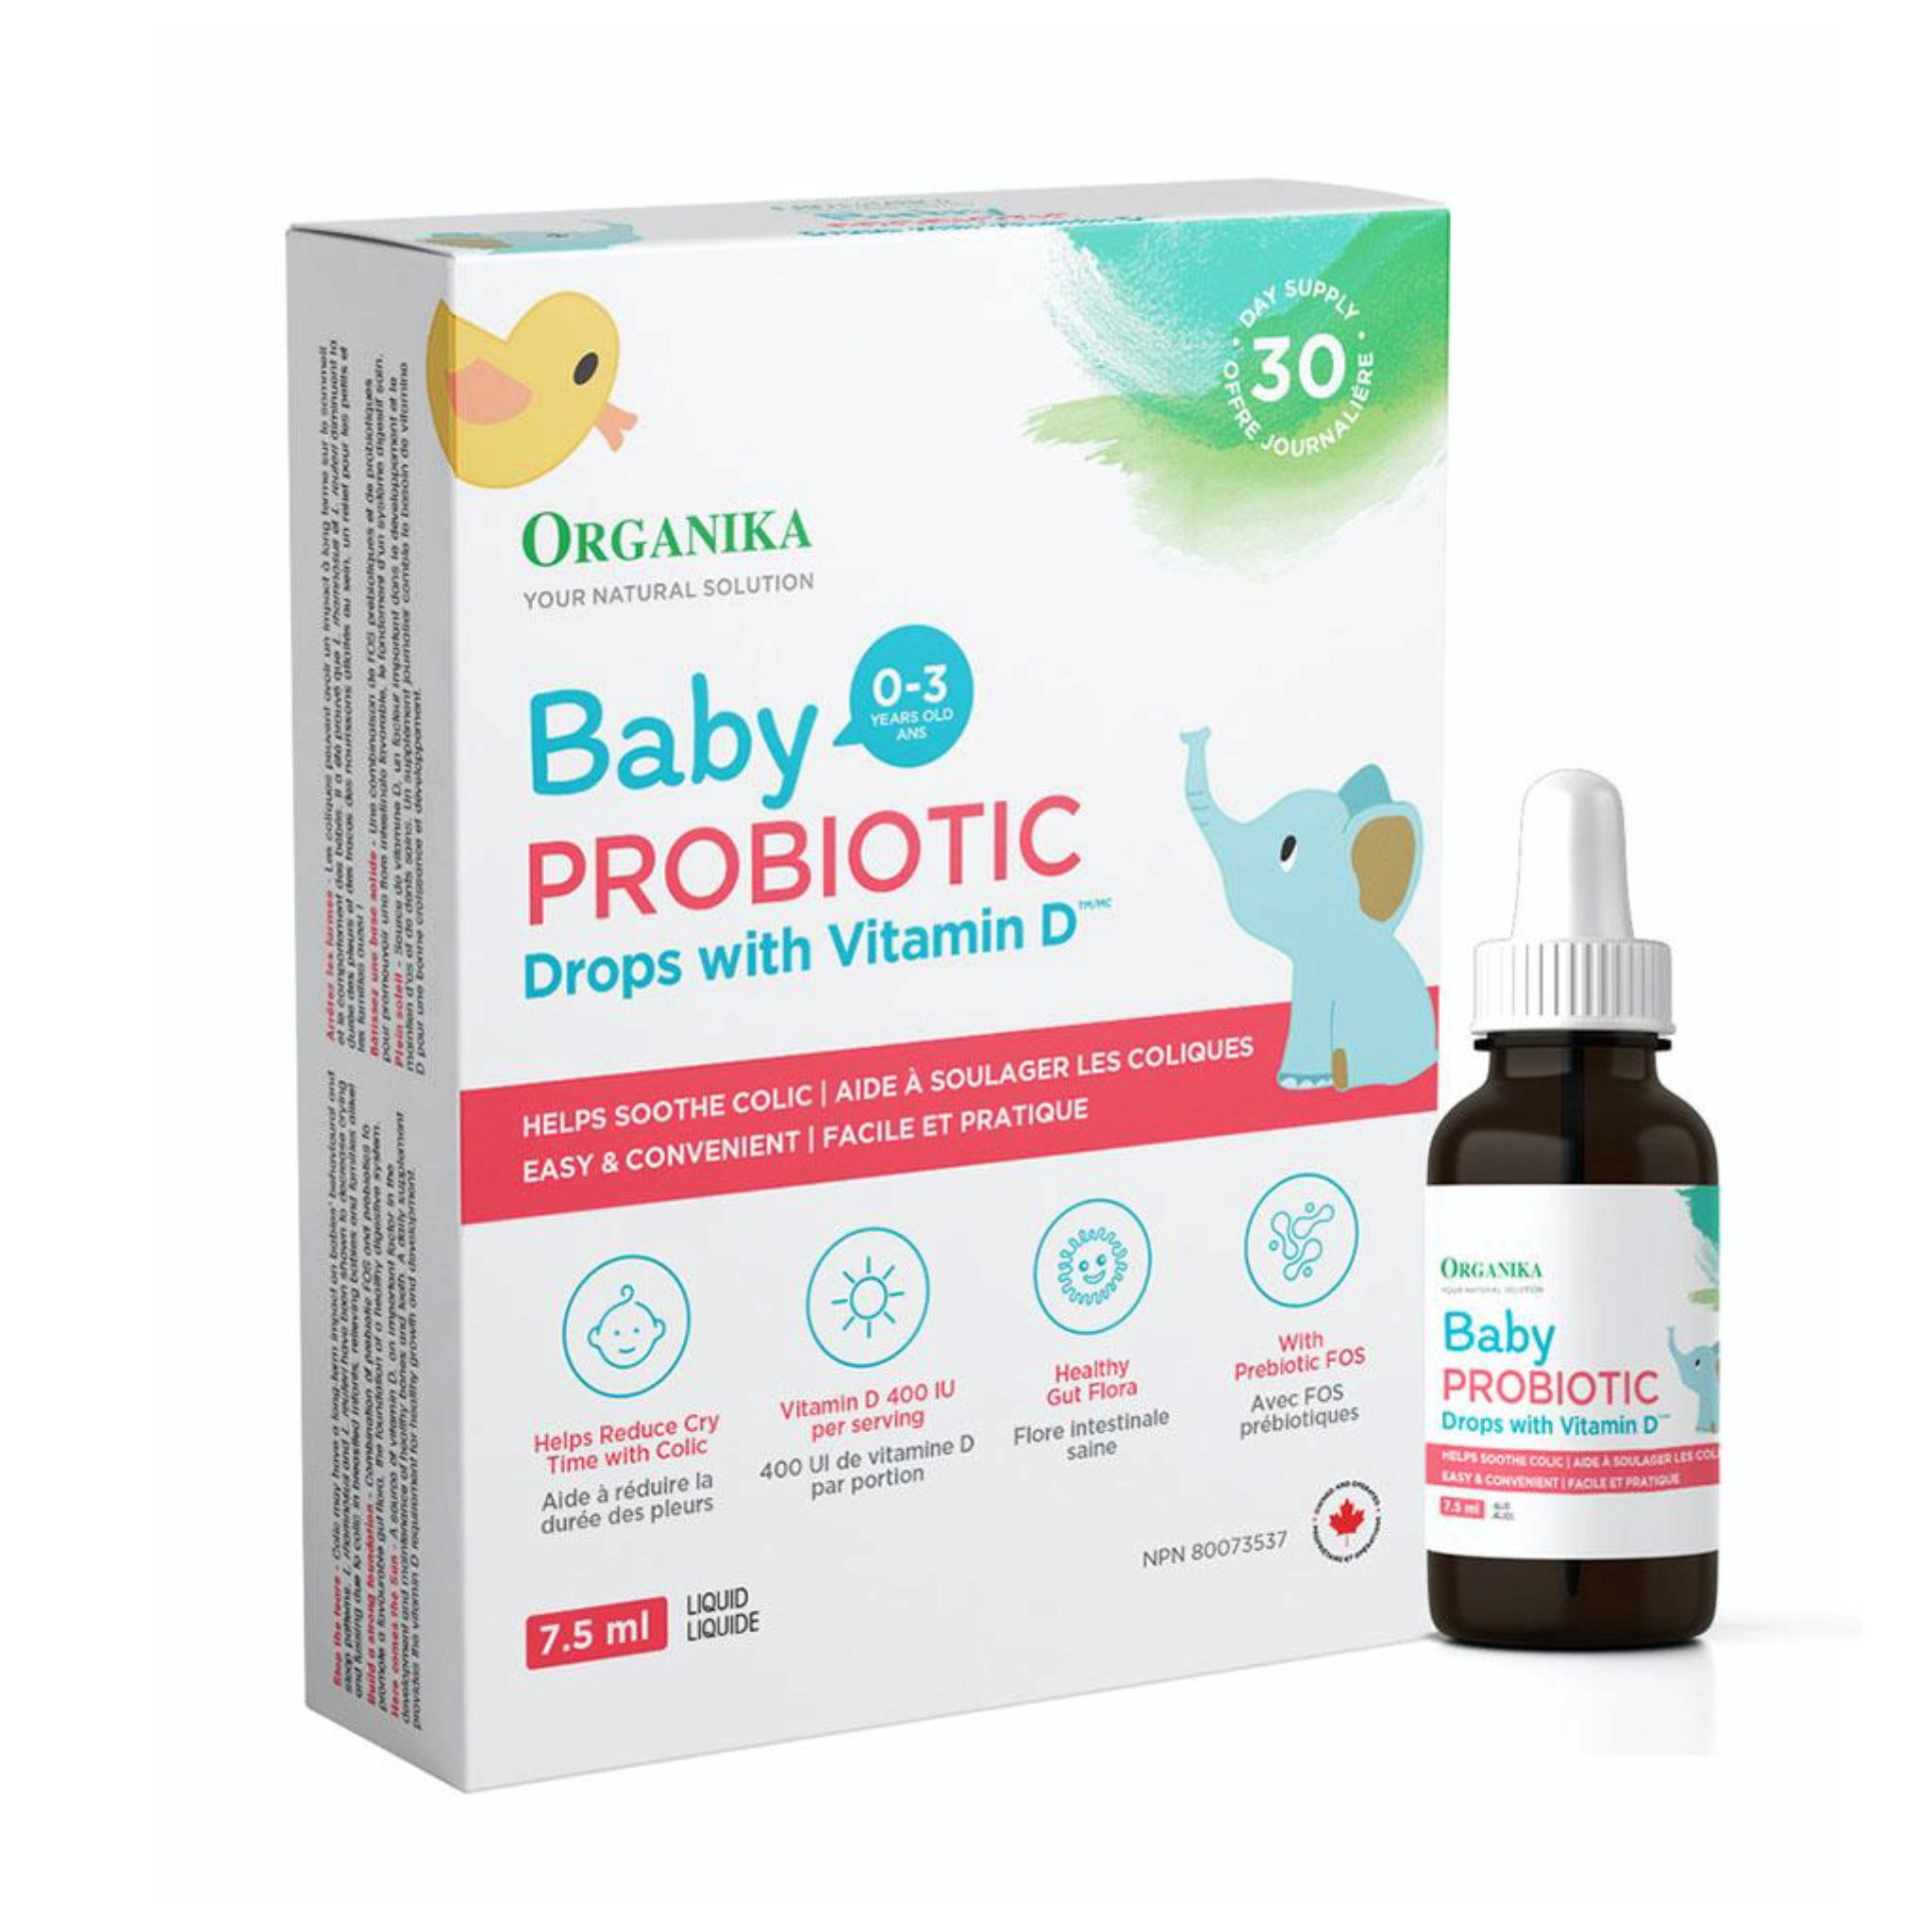 Les Meilleurs Probiotiques Pour Bebes Et Un Guide De Sante Intestinale Pour Bebe